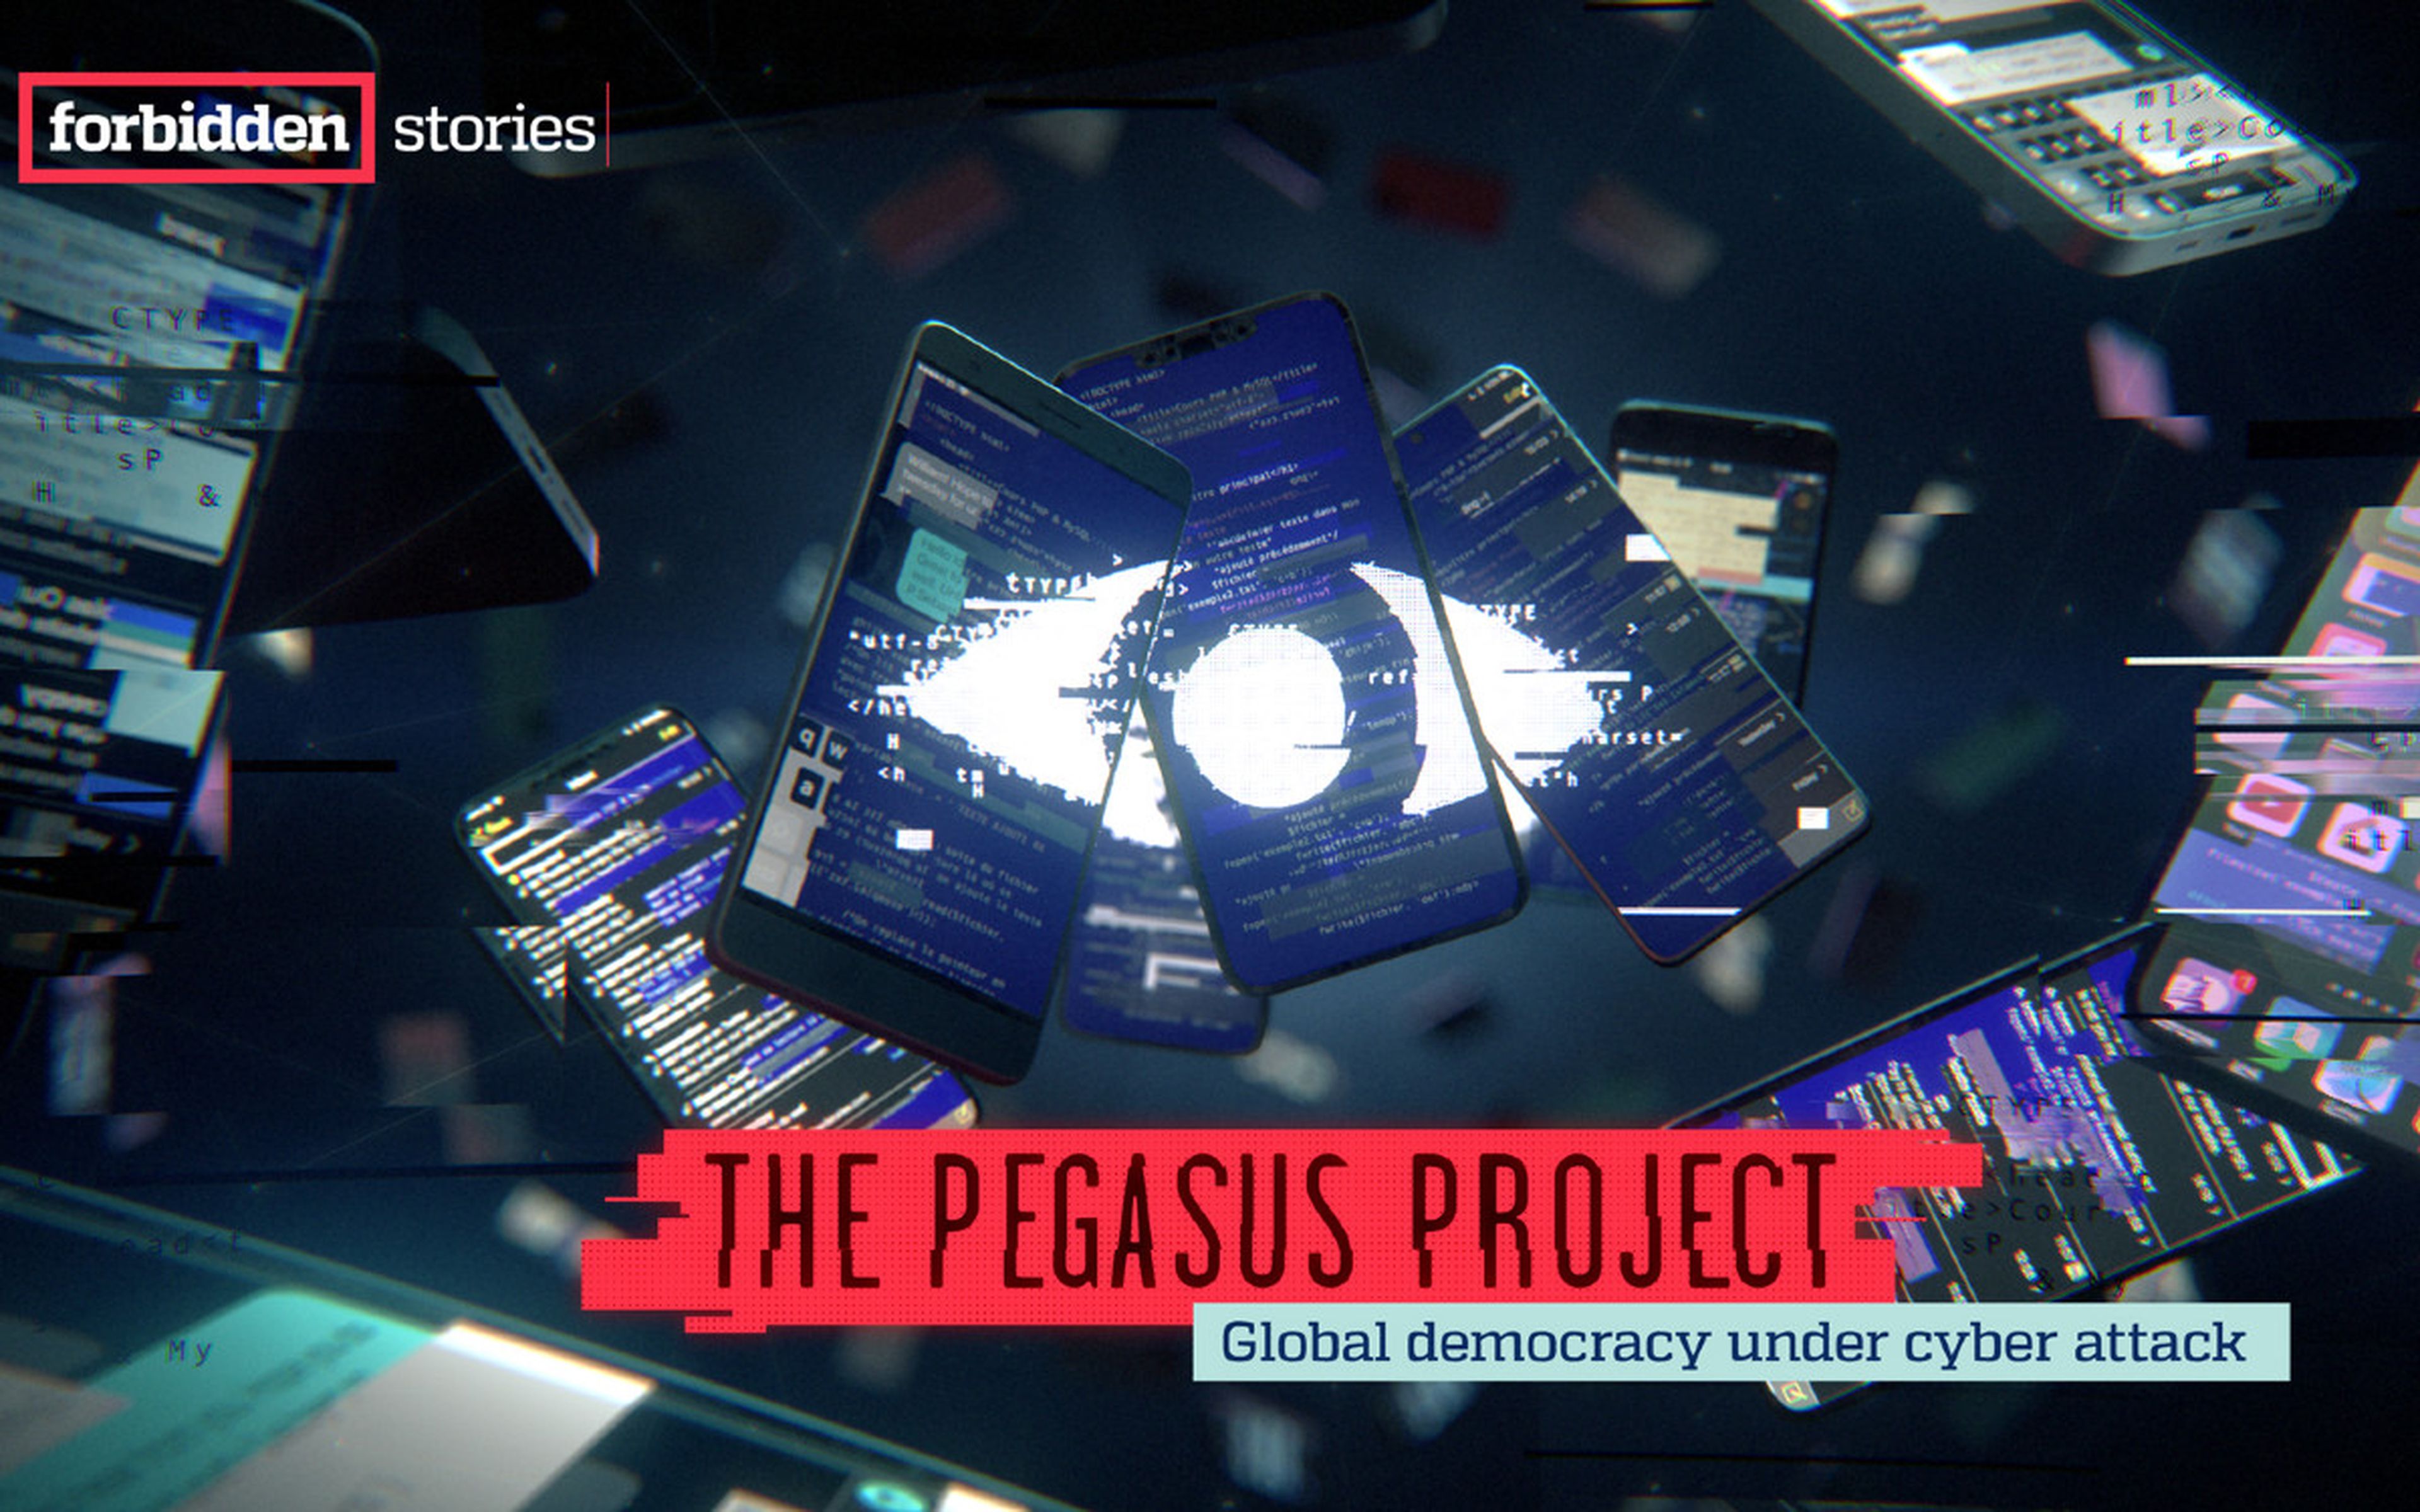 Imagen oficial del Proyecto Pegasus